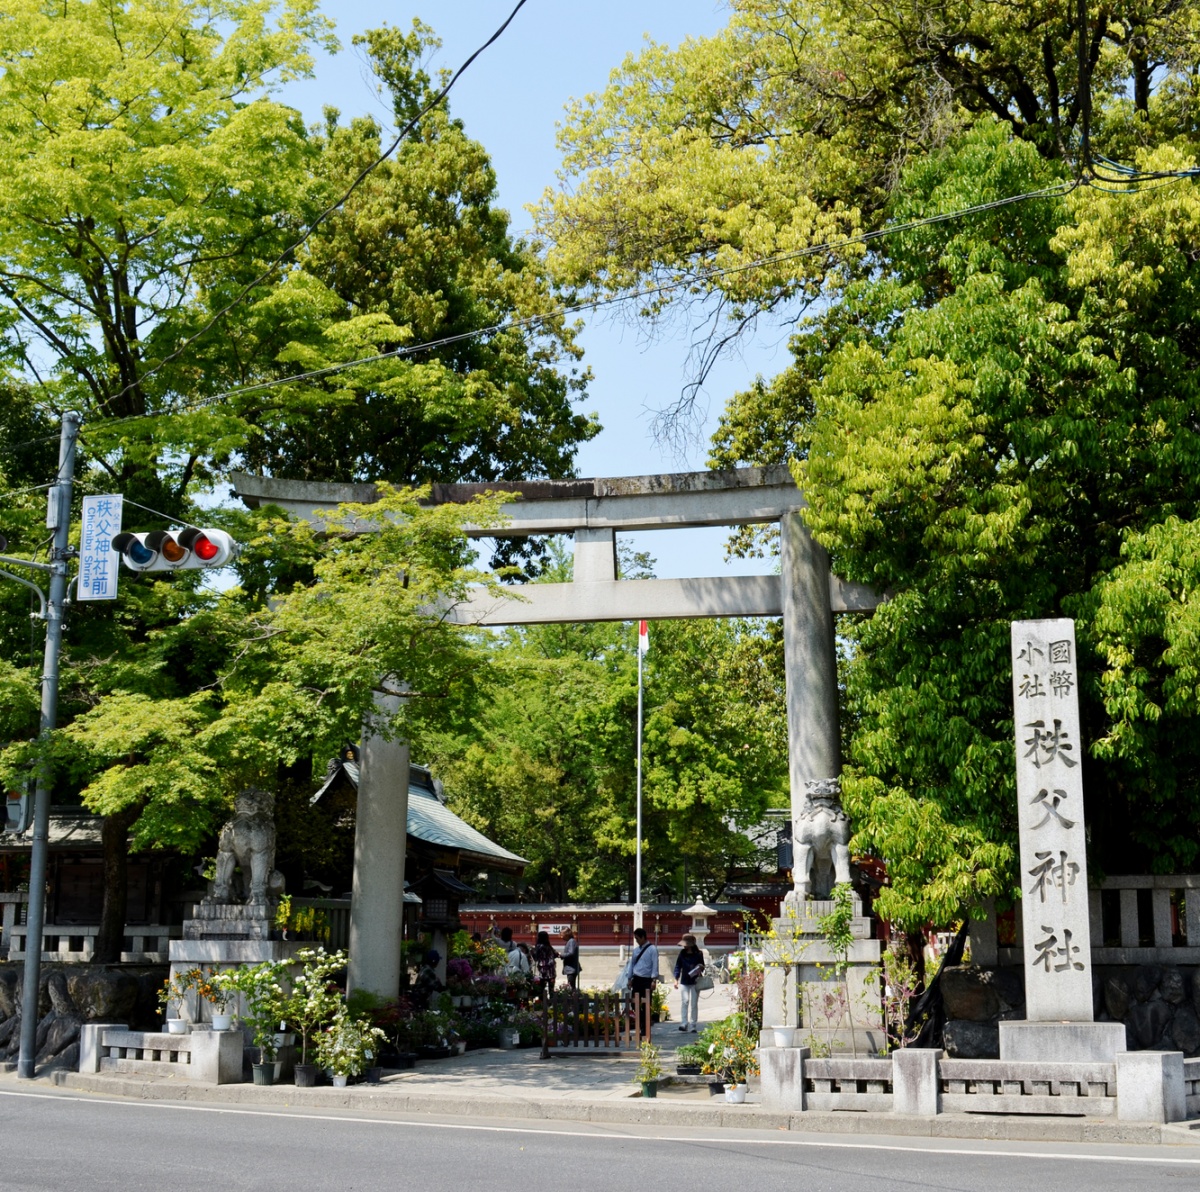 6. ศาลเจ้าชิชิบุ (Chichibu Shrine) ในจังหวัดไซตามะ (Saitama) จากเรื่อง Anohana: The Flower We Saw That Day